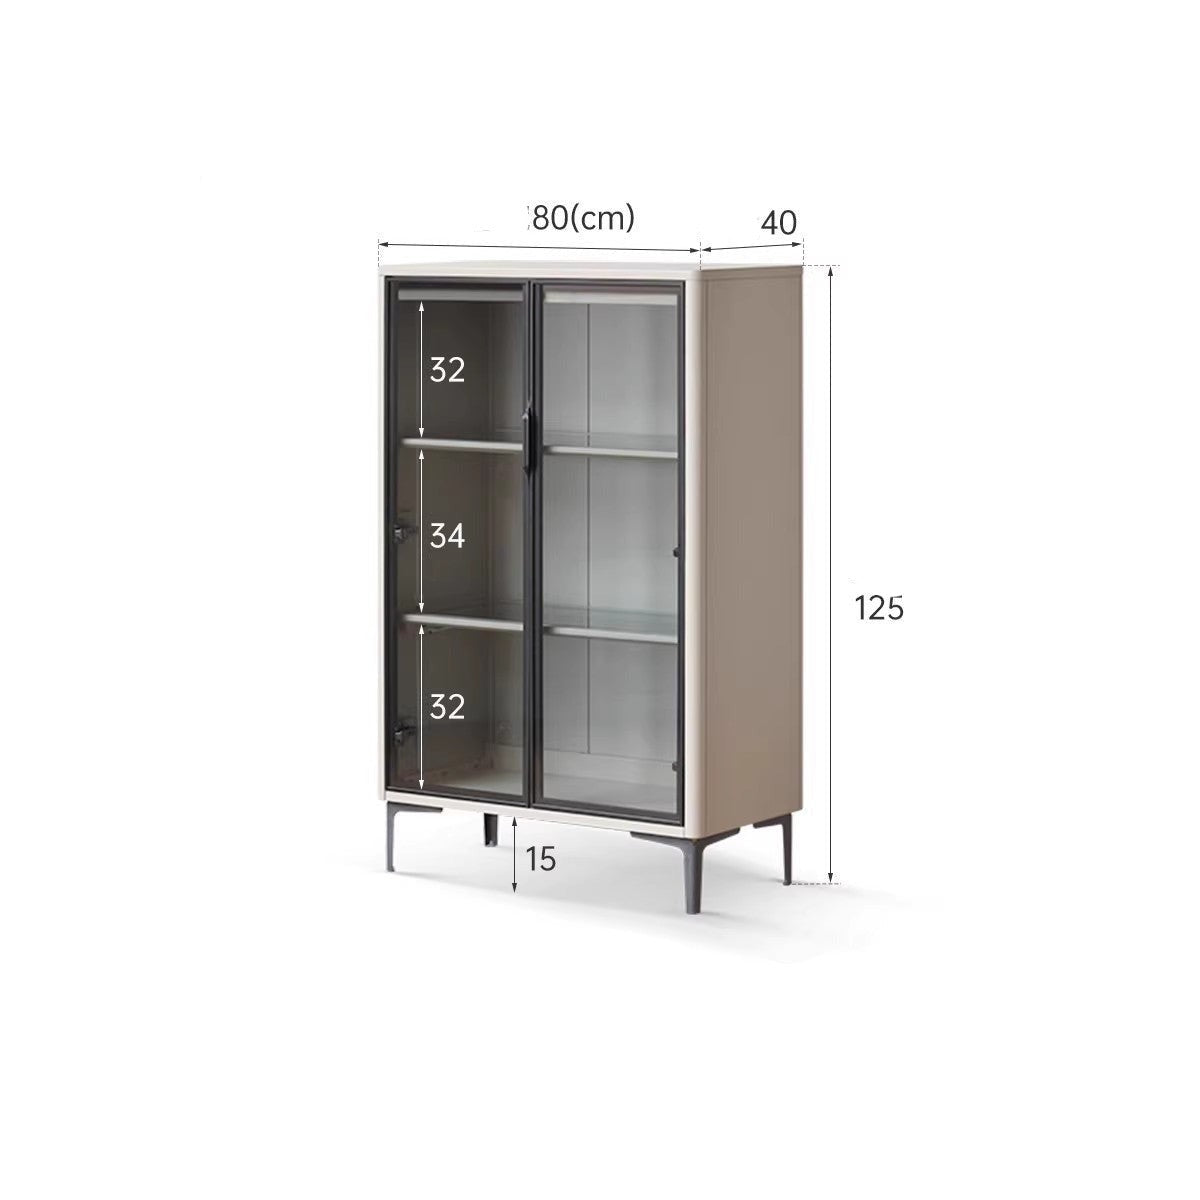 Poplar solid wood wine cabinet , display cabinet glass door light luxury -